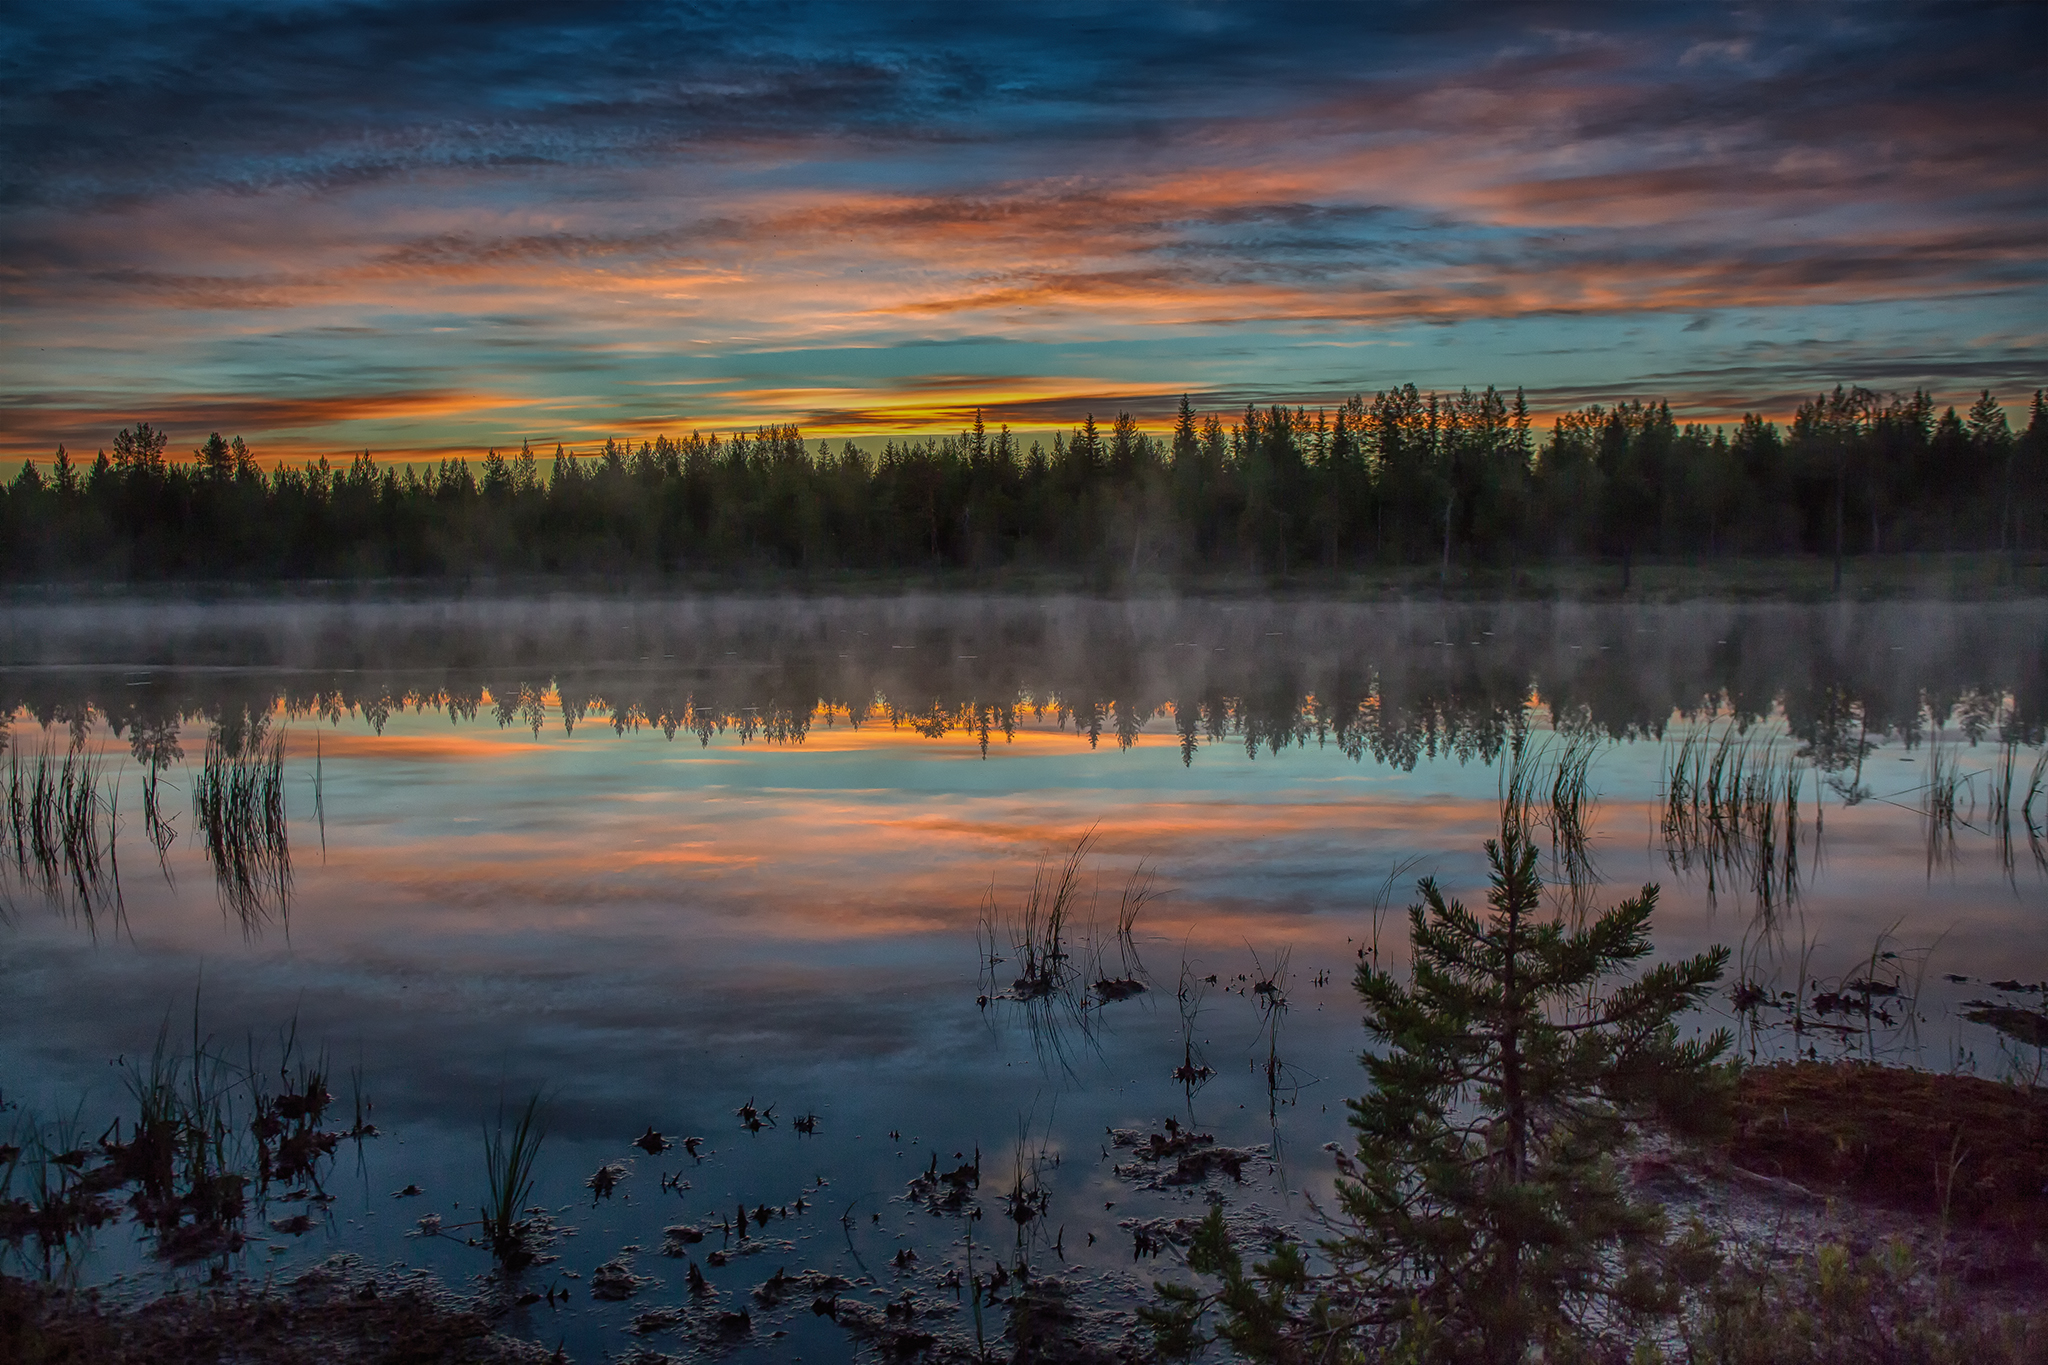   Fra de dype Finske skoger, akkurat ferdig med å fotografere ville Bjørner. På natten ble lyset magisk.&nbsp;    Martinselkosen 2016  